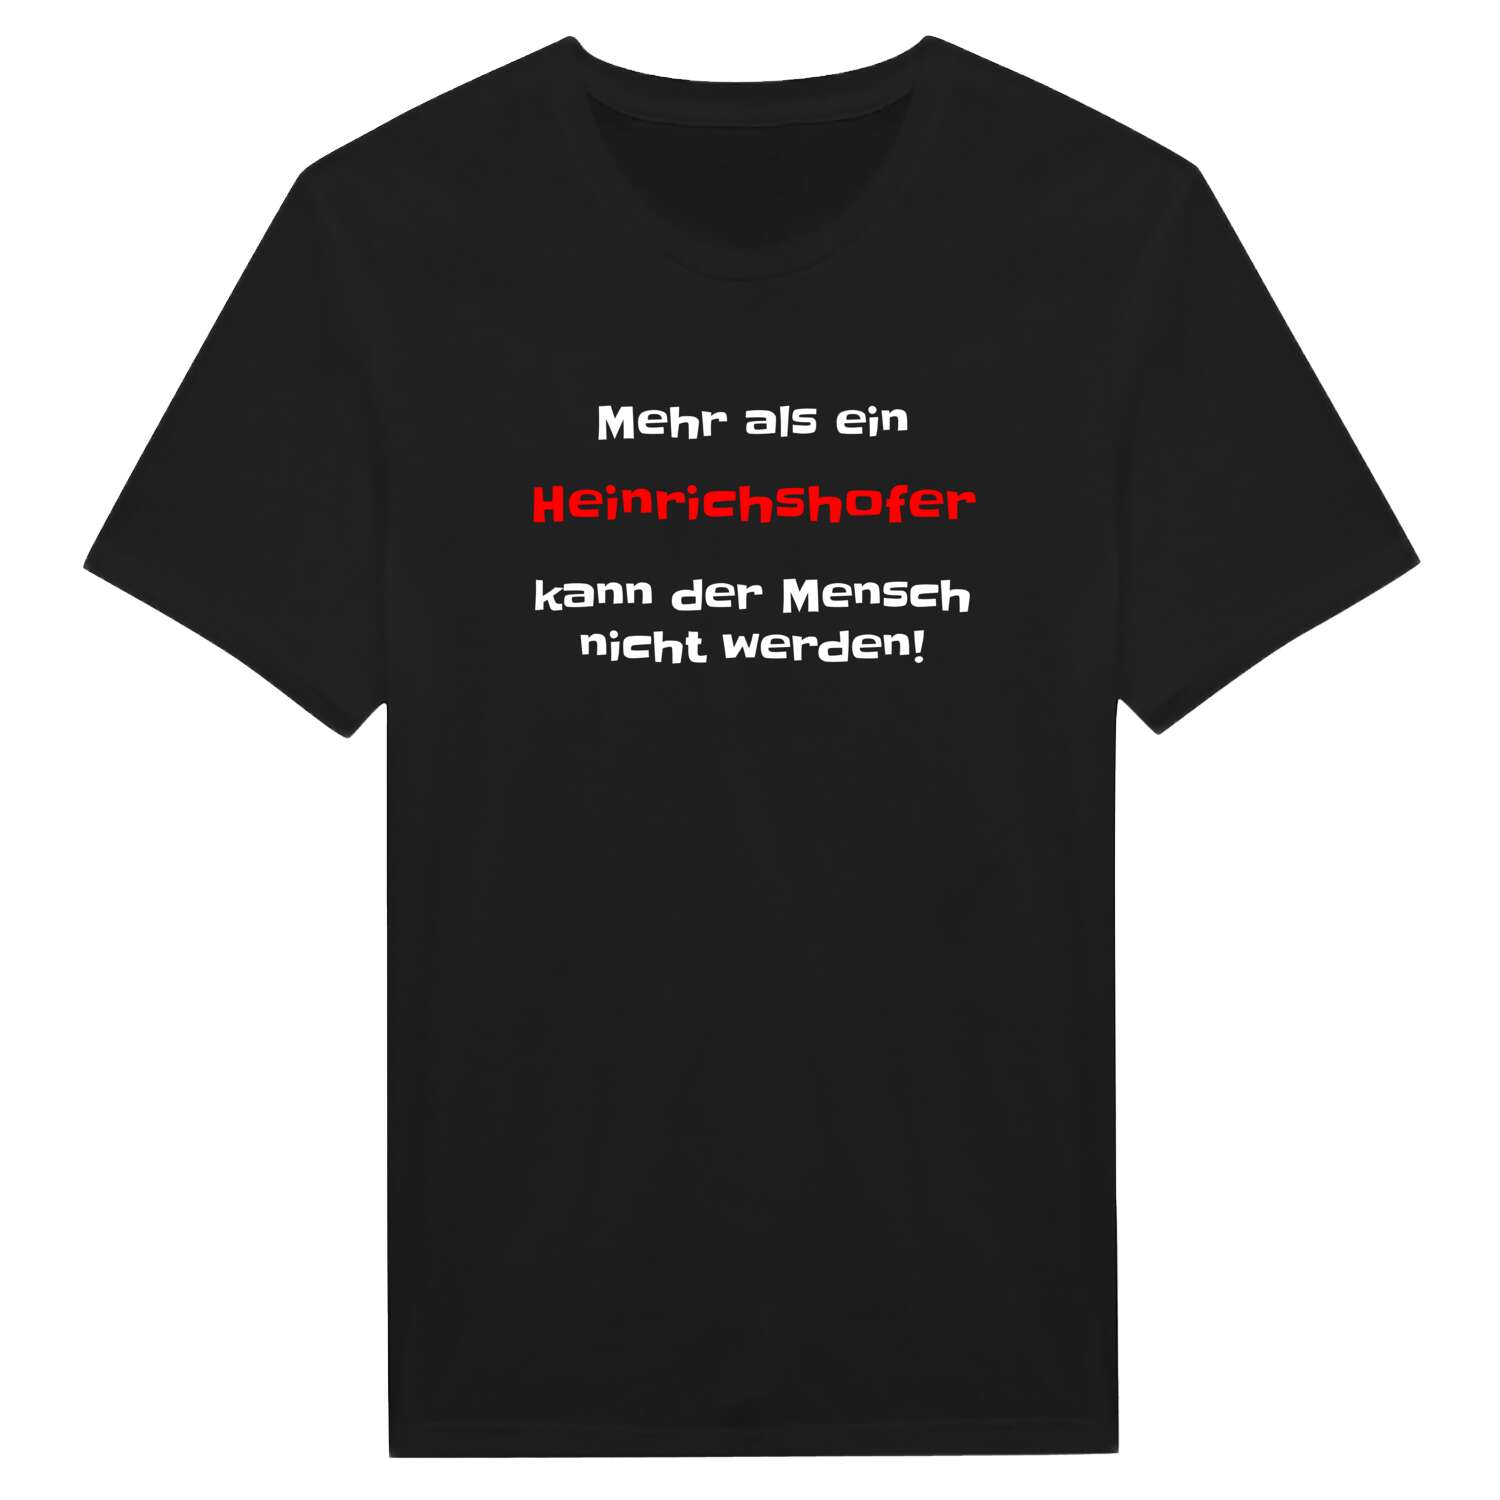 Heinrichshof T-Shirt »Mehr als ein«